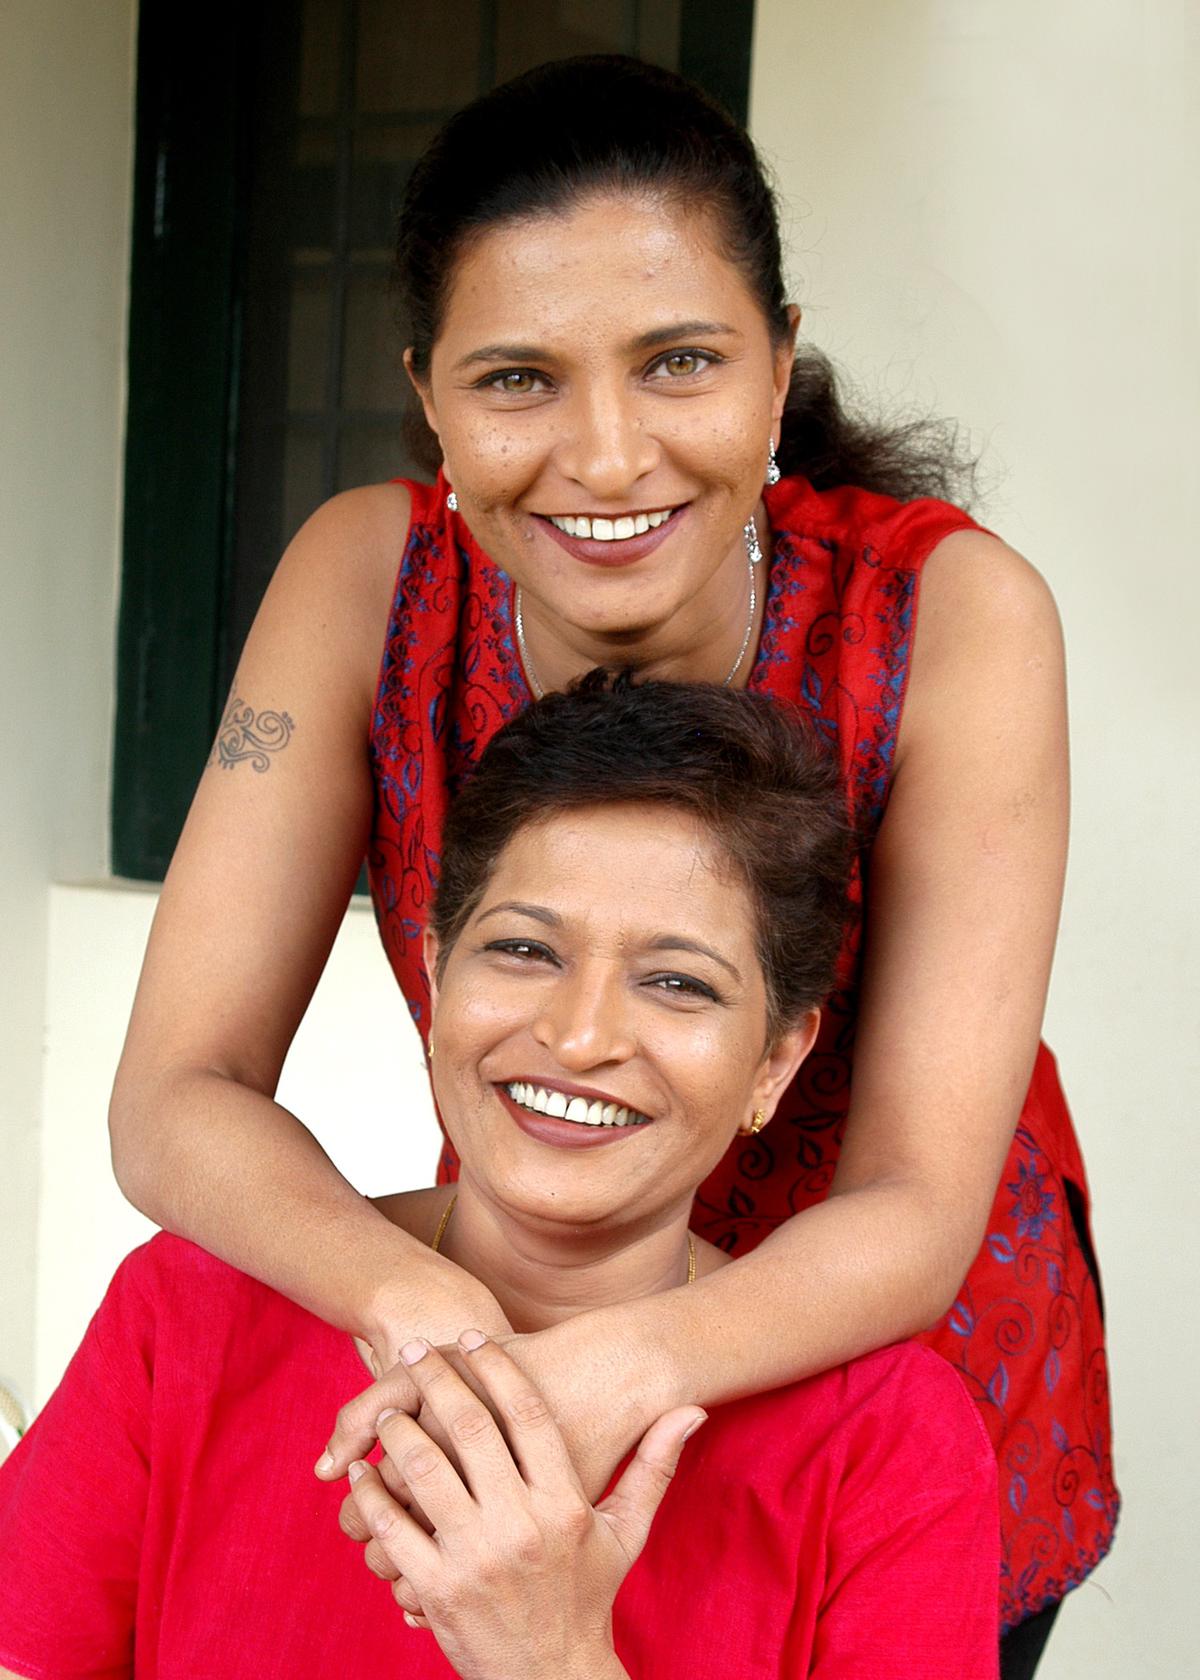 “L’Inde retrouve ses références démocratiques sera une véritable justice pour Gauri”, déclare Kavitha Lankesh